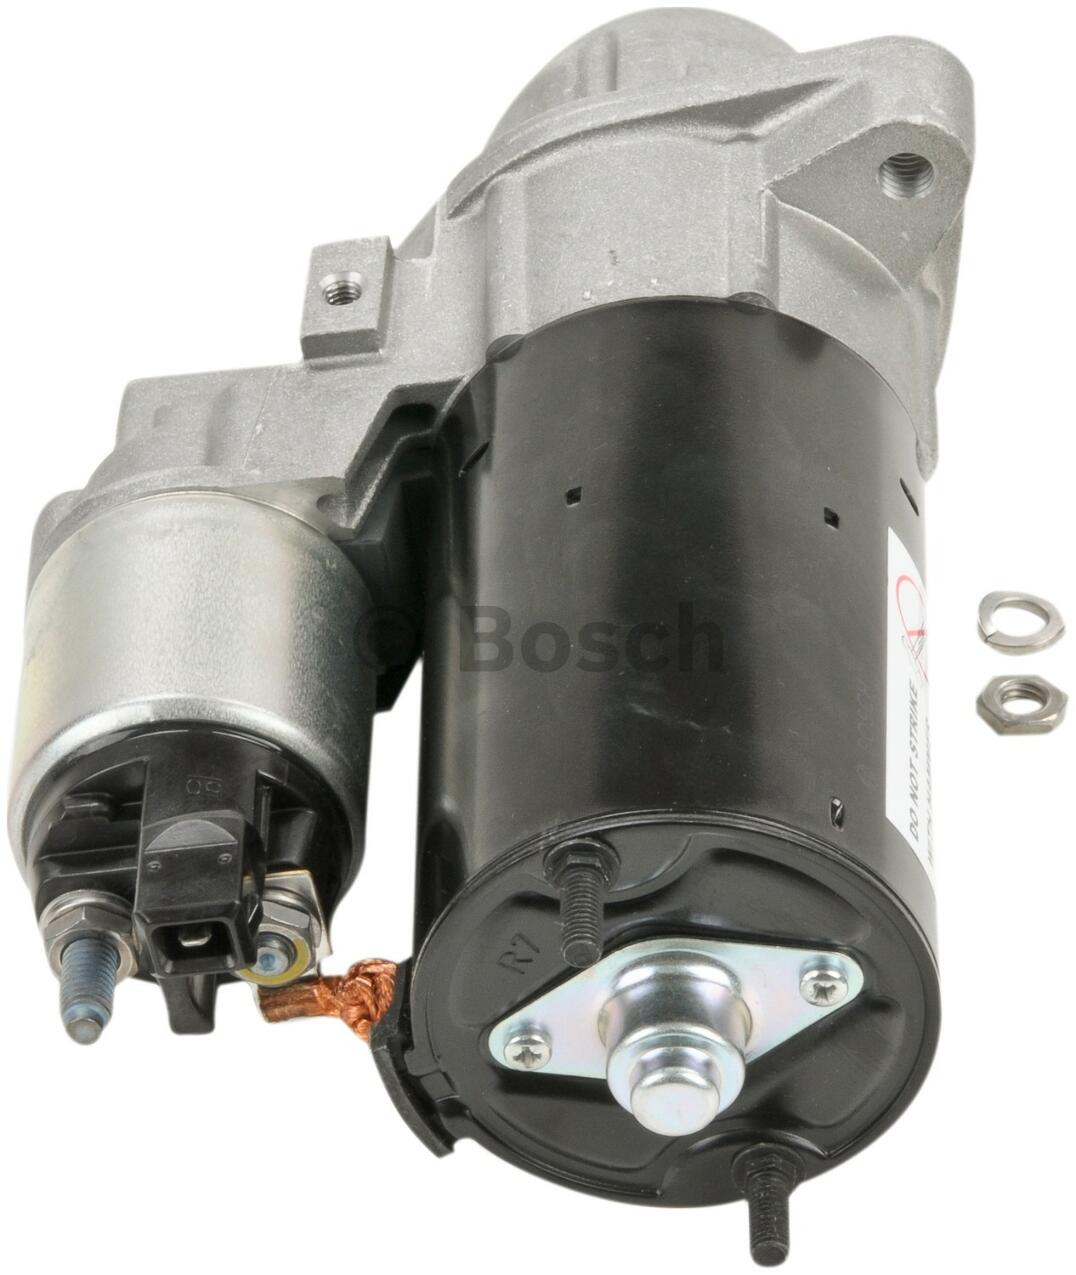 BMW Starter Motor (New) 12417610351 - Bosch SR0809N